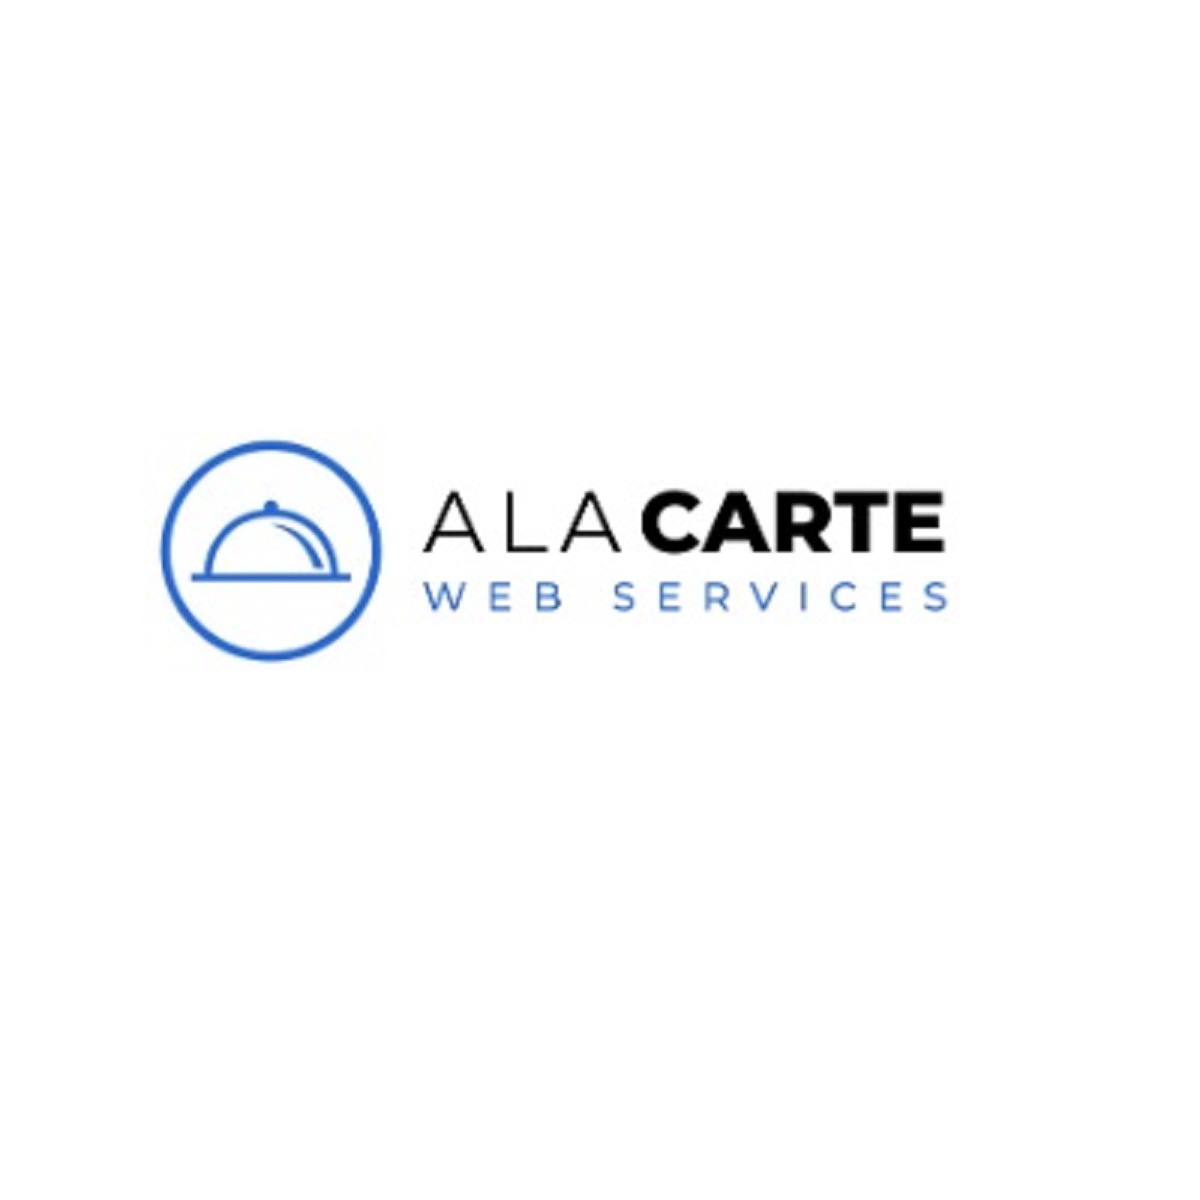 A La Carte Web Services Cover Image